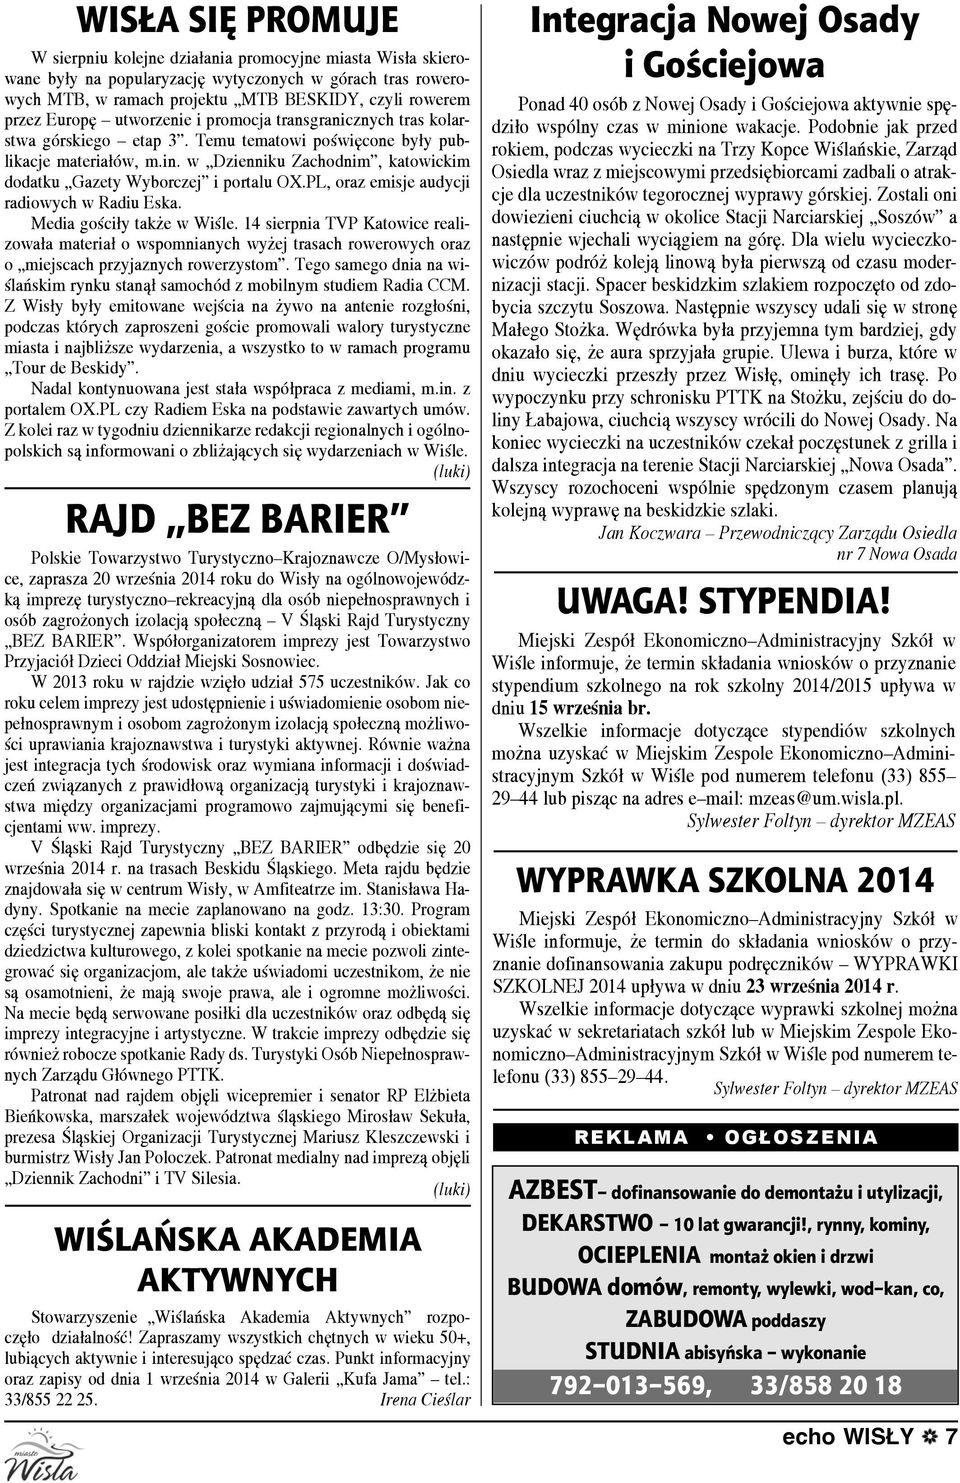 w Dzienniku Zachodnim, katowickim dodatku Gazety Wyborczej i portalu OX.PL, oraz emisje audycji radiowych w Radiu Eska. Media gościły także w Wiśle.